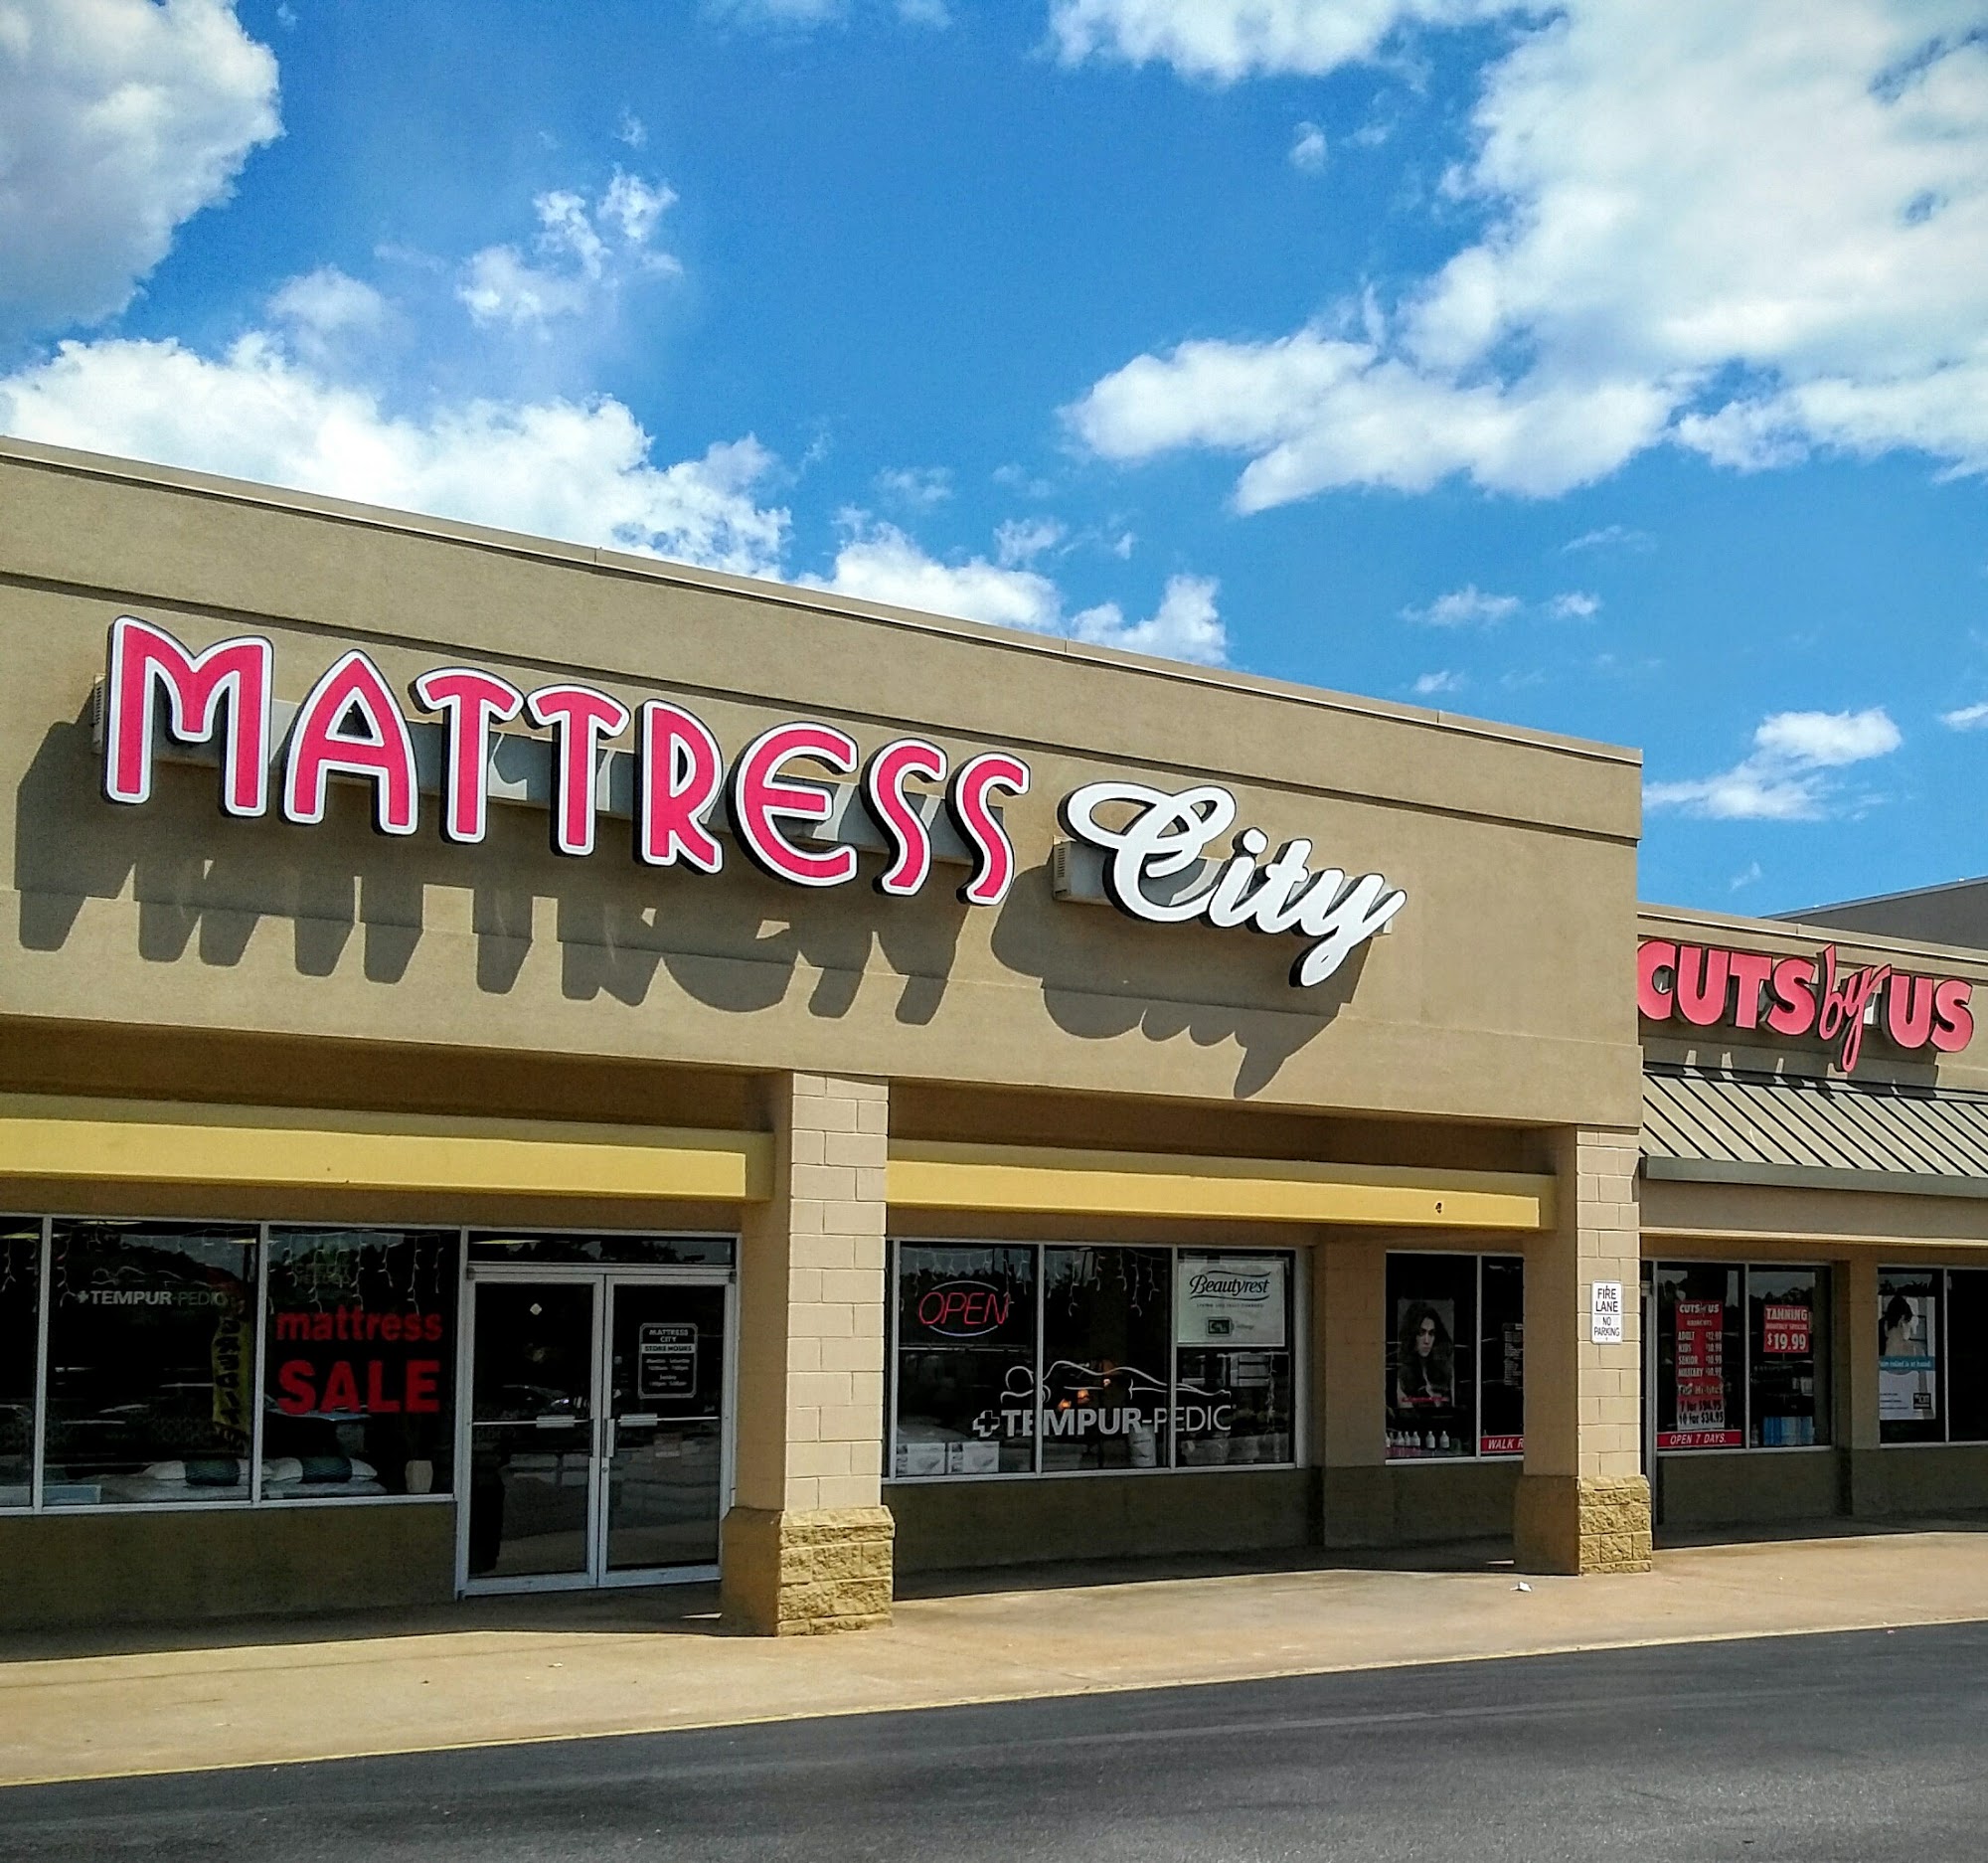 Mattress City